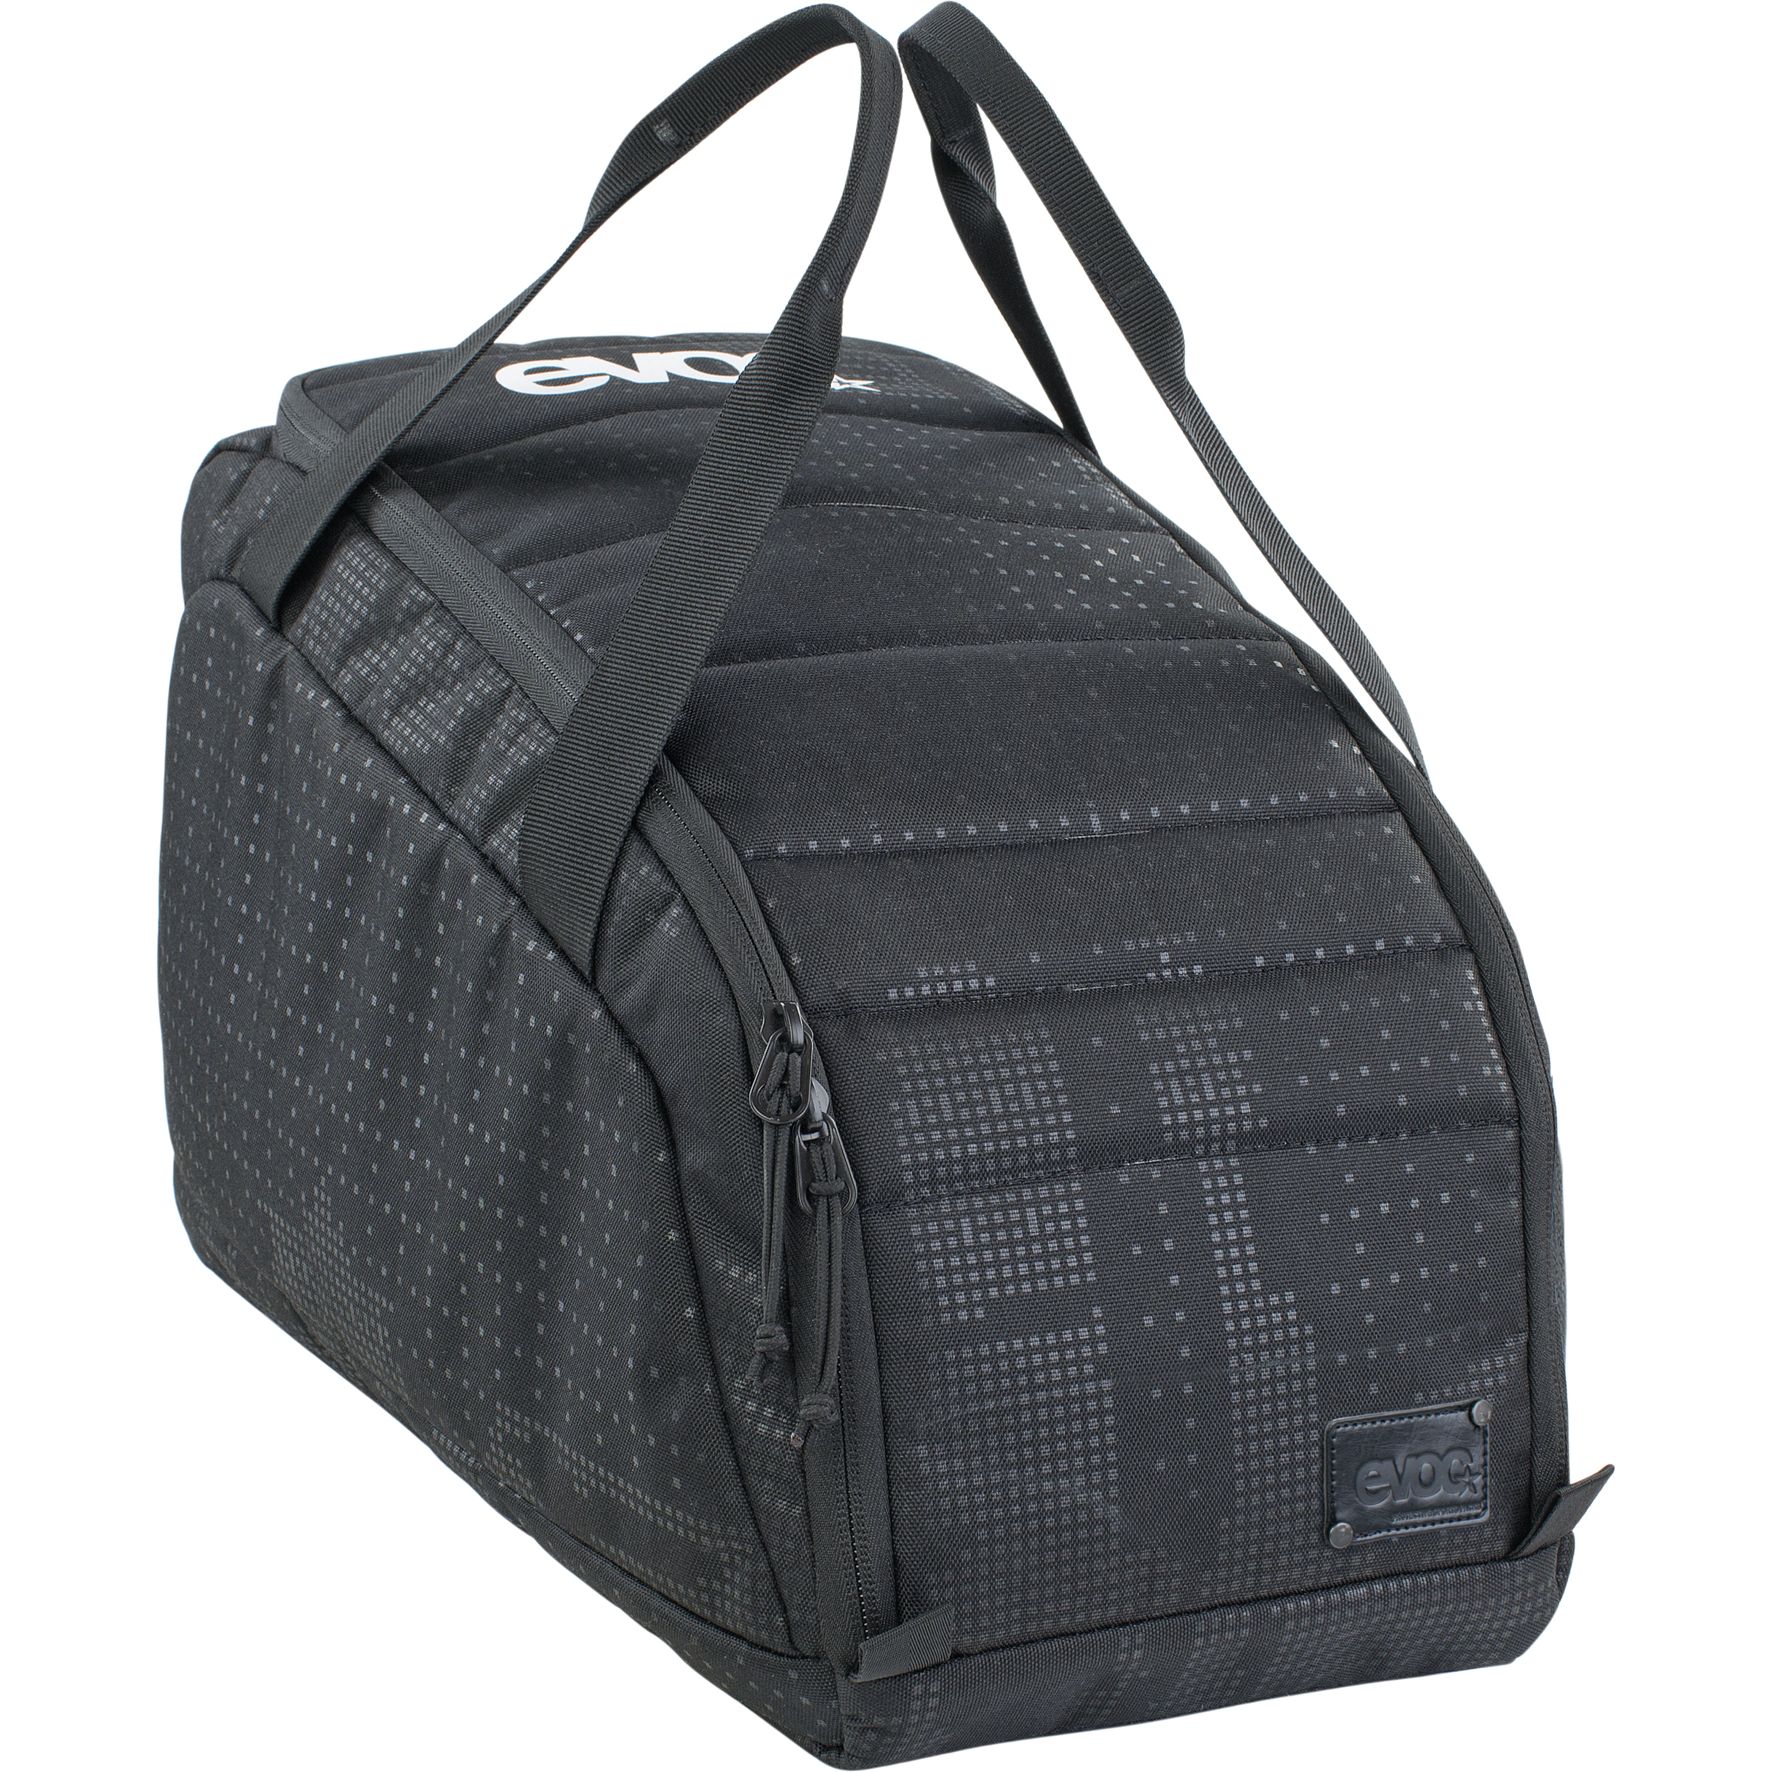 Productfoto van EVOC Gear Bag 20L - Black